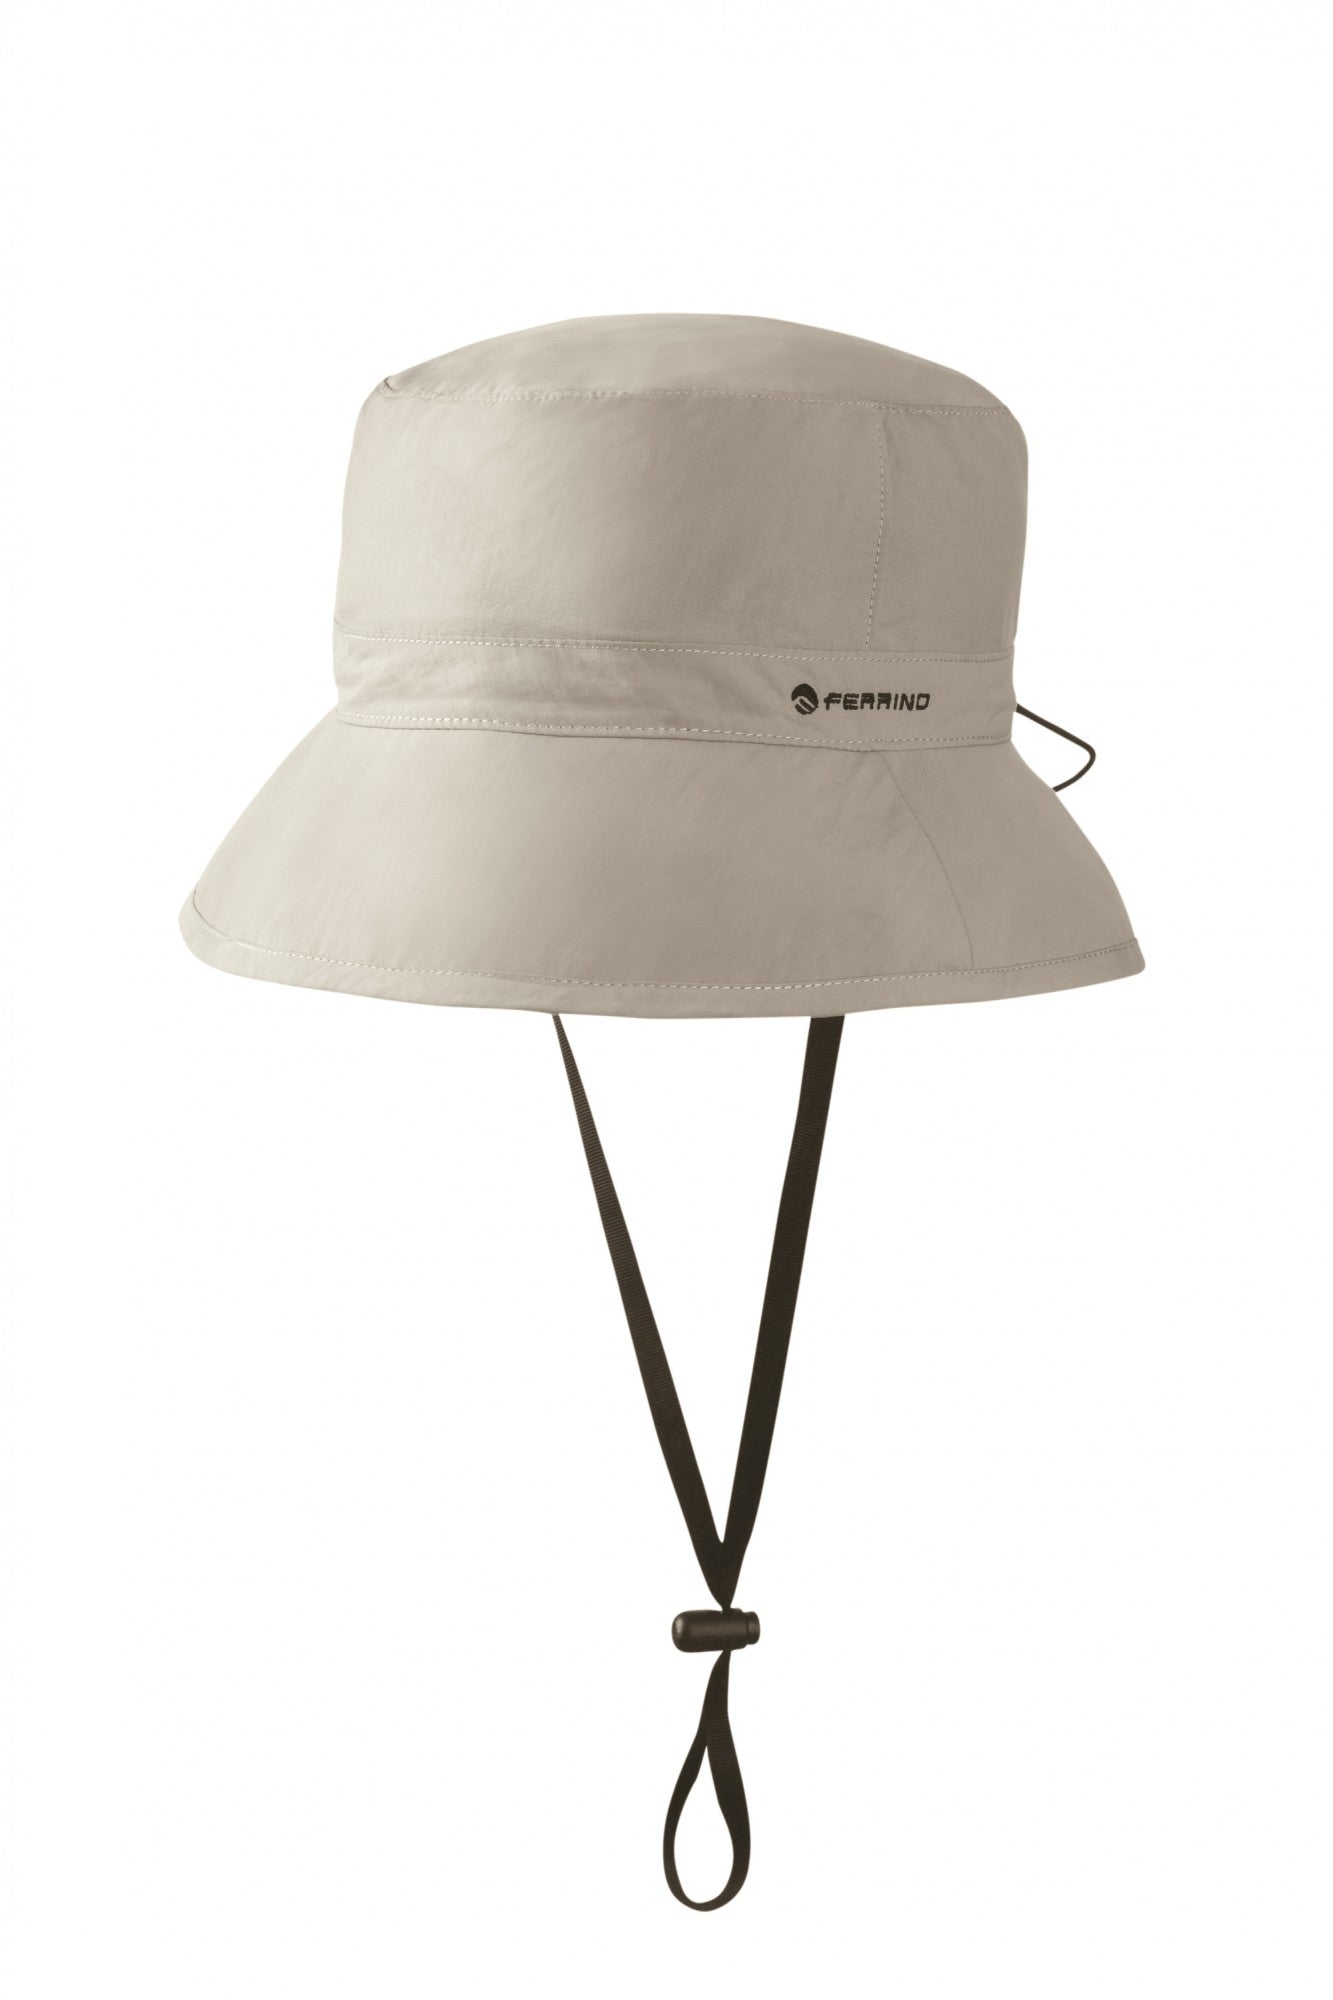 Ferrino Pack It Hat - Cappello Da Trekking Unisex